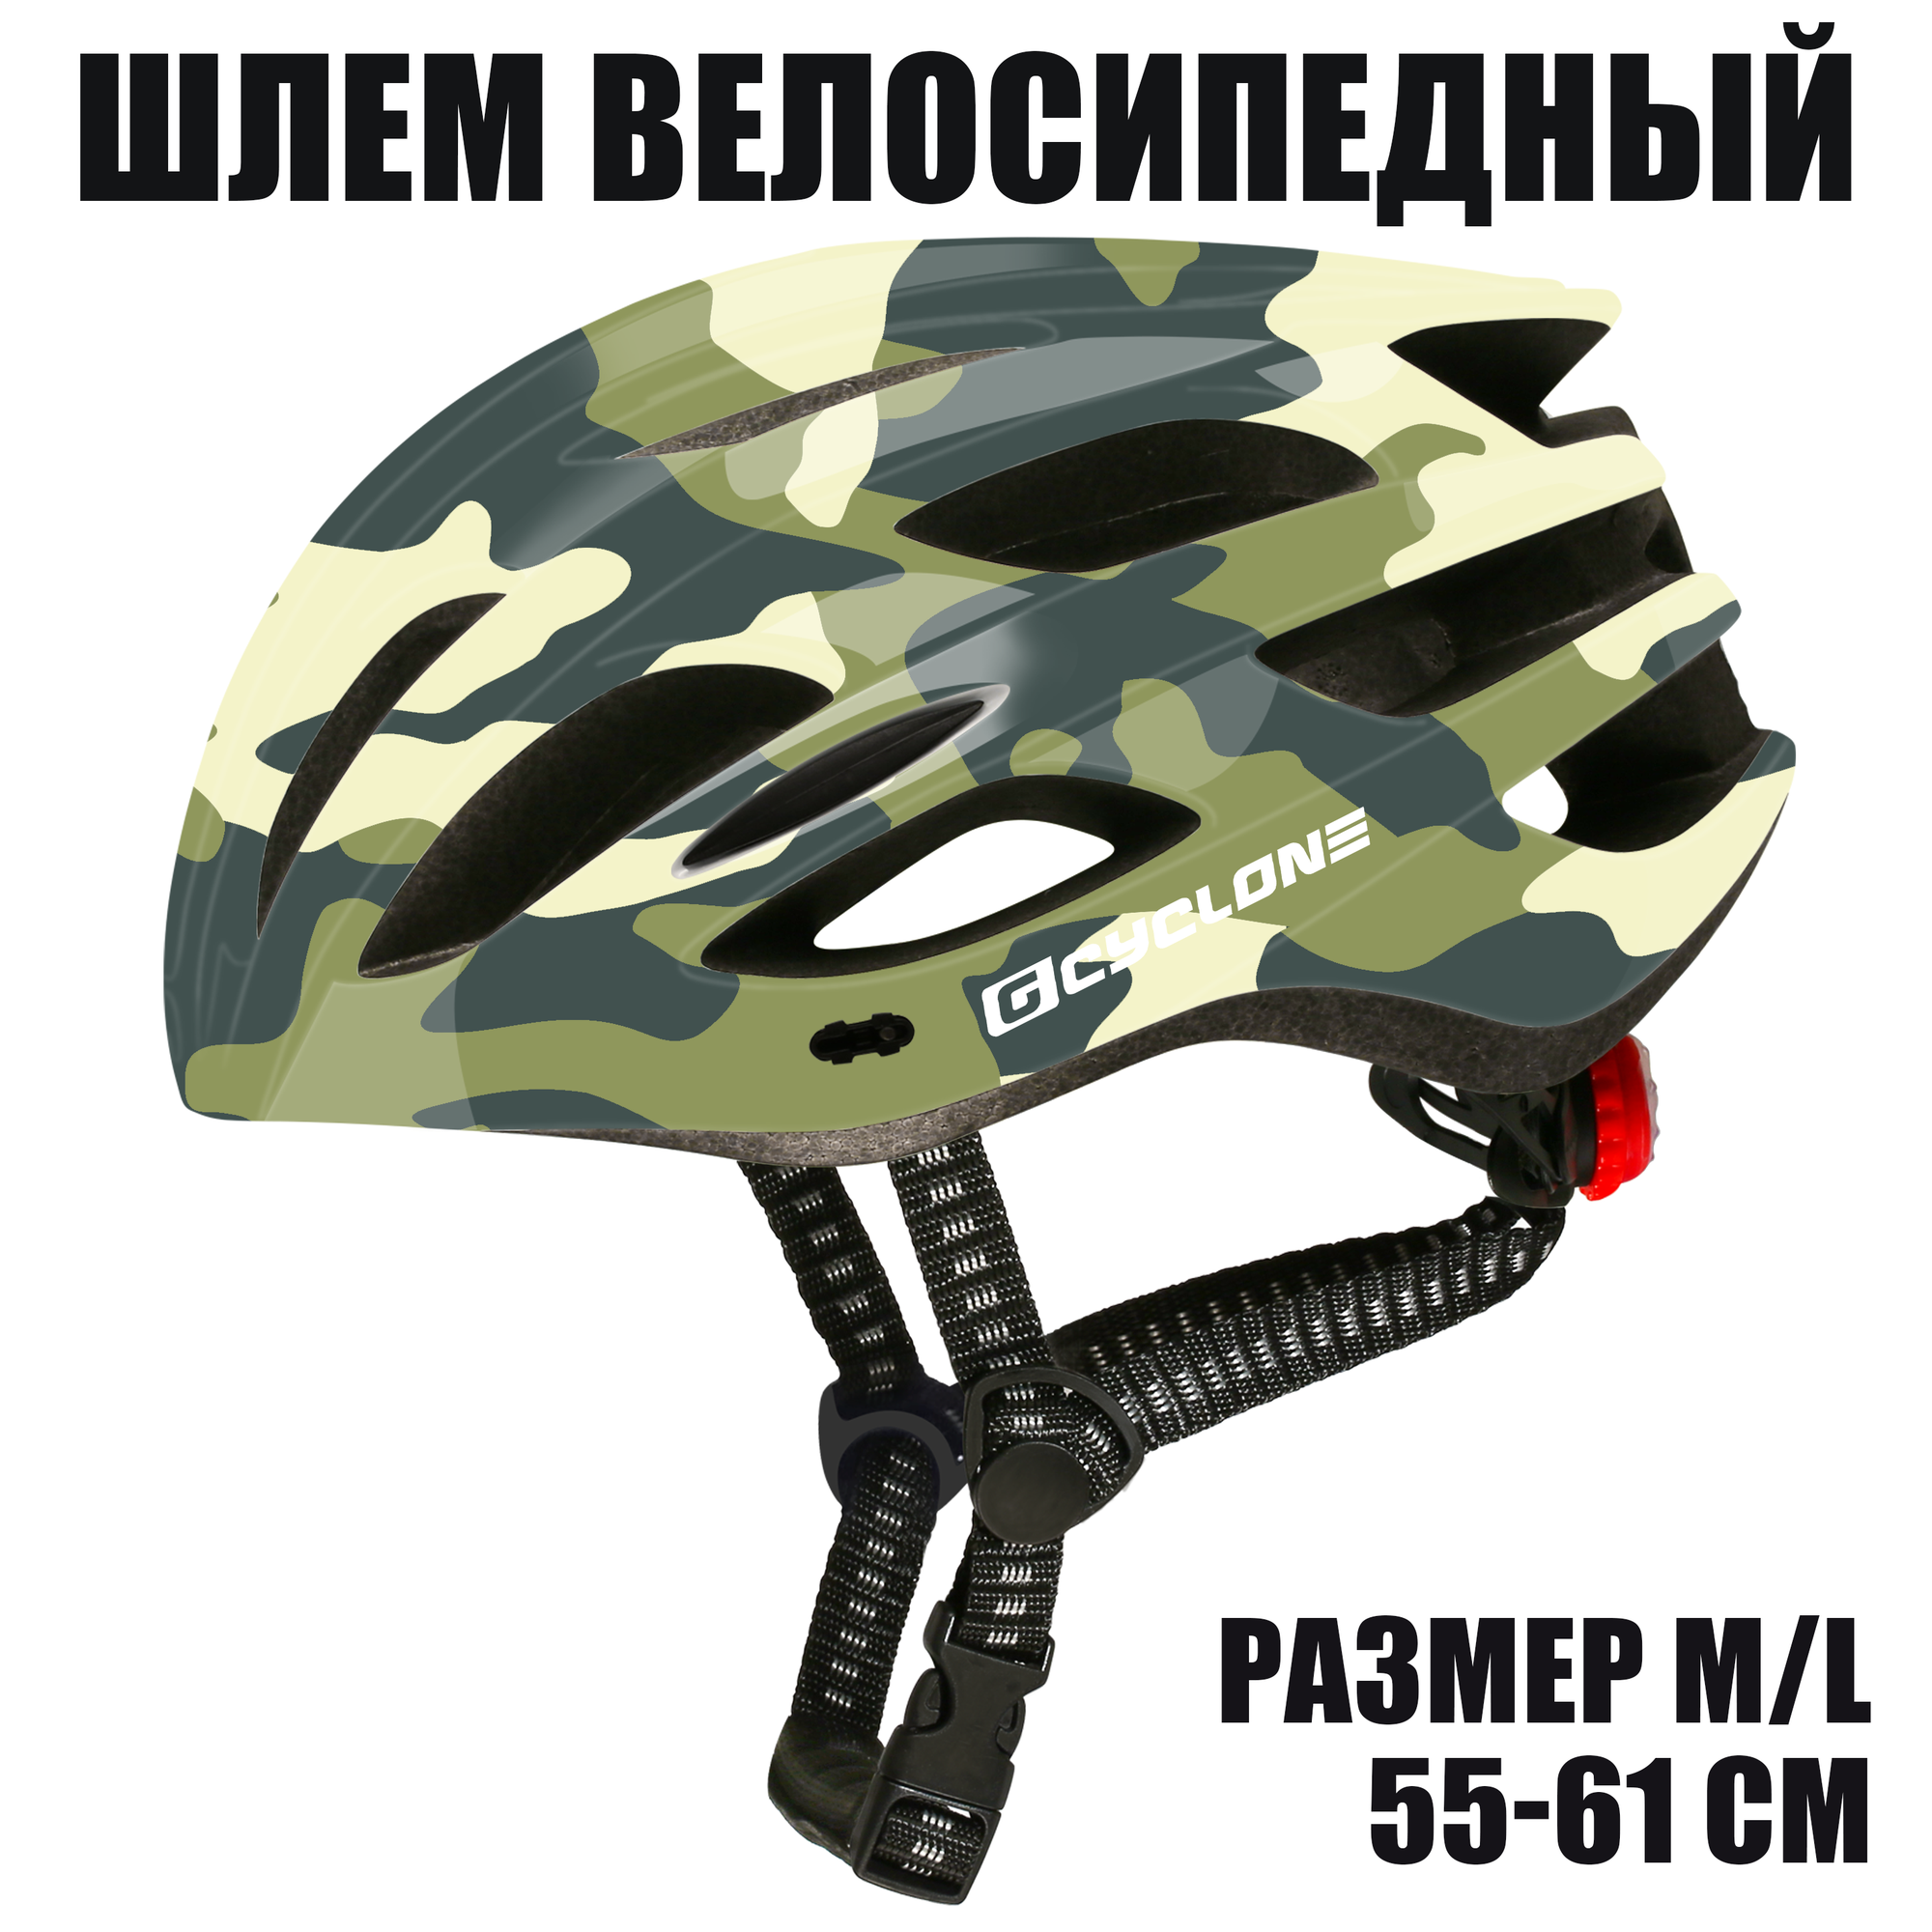 Шлем велосипедный GEAR CYCLONE Basic (размер M/L 55-61 см)